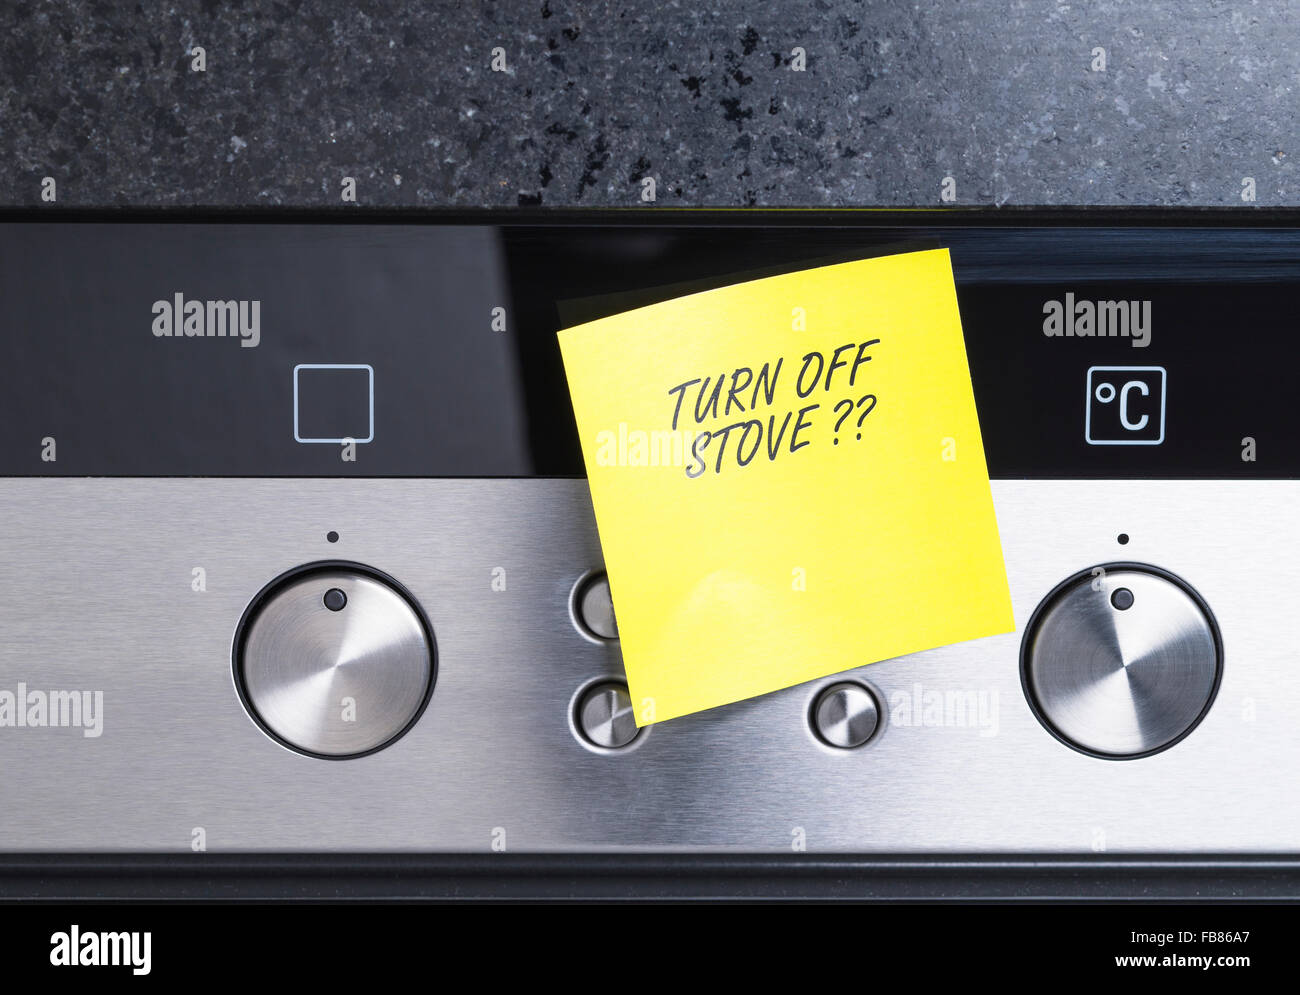 La imagen muestra una notificación en una cocina eléctrica Foto de stock